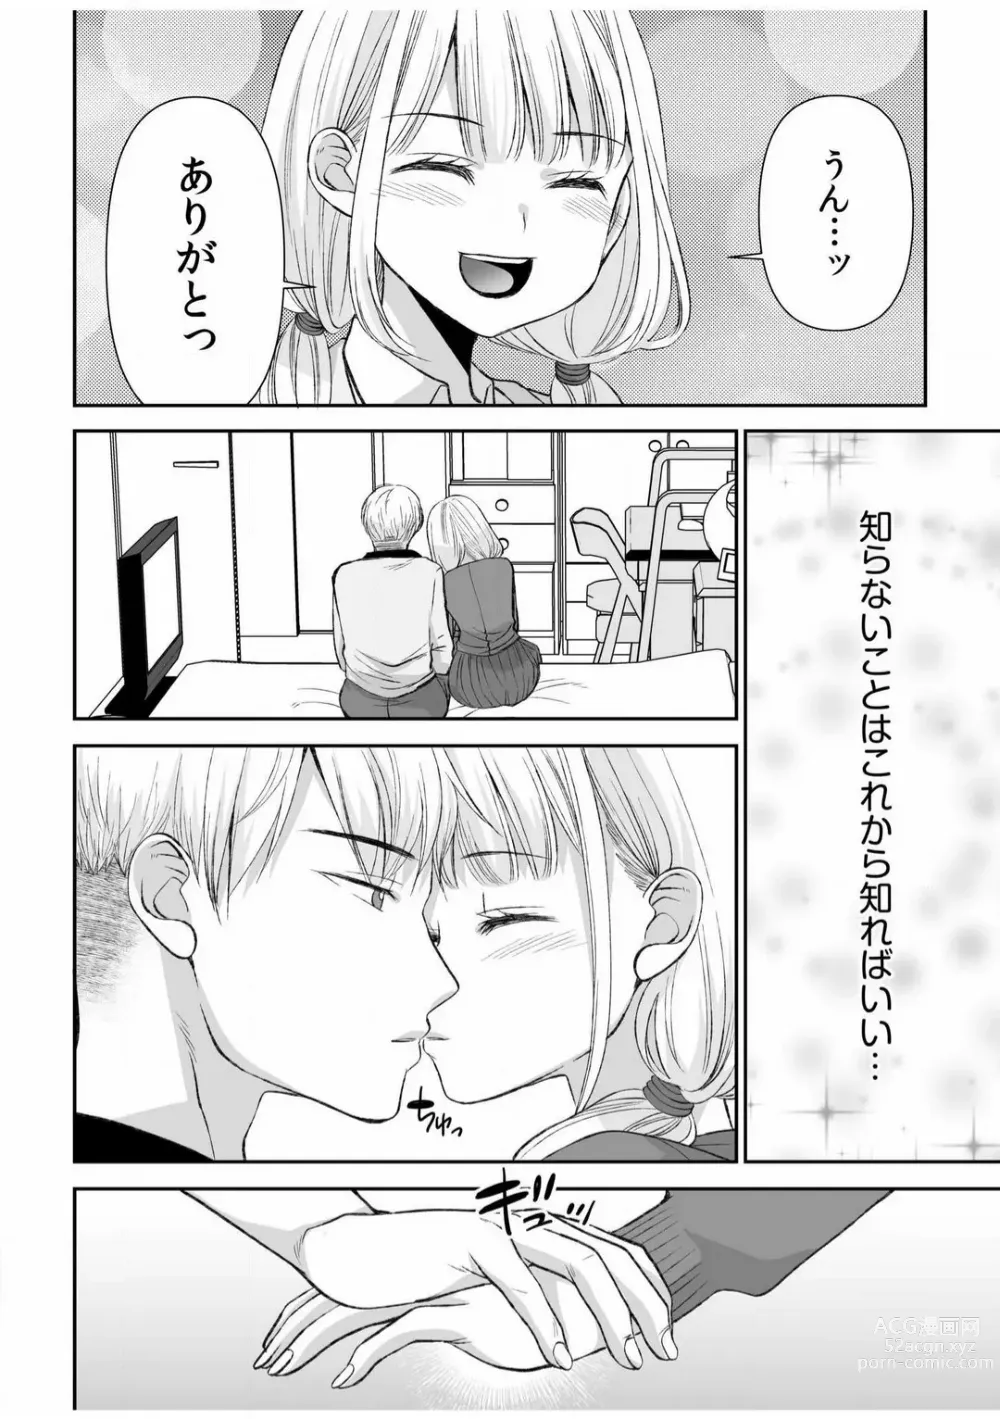 Page 237 of manga Yada... Naka Ippai Shinaide...